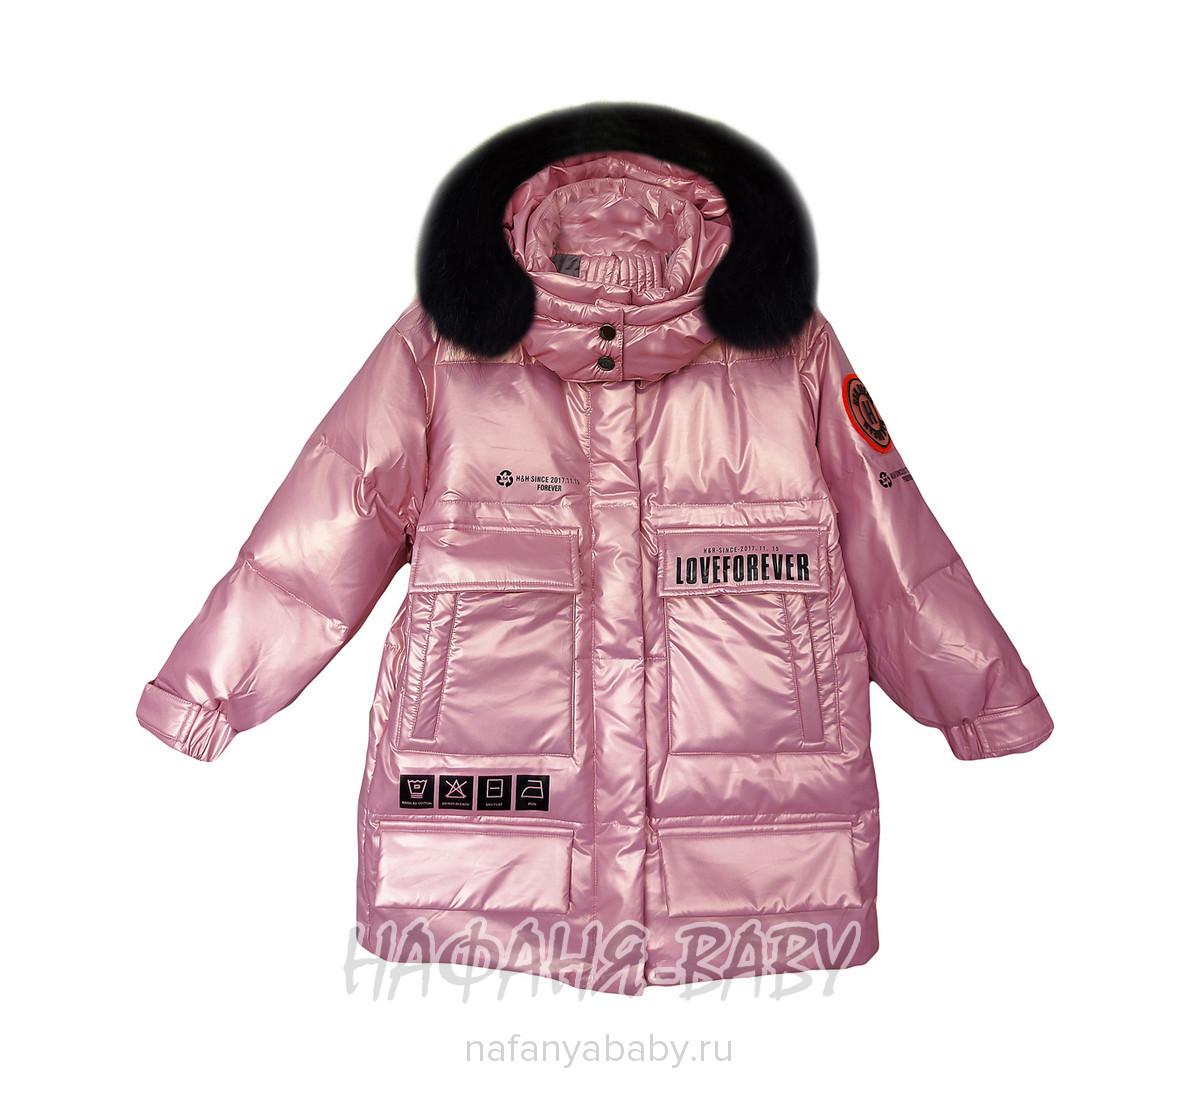 Зимняя удлиненная куртка  MAY JM арт: 9215, 10-15 лет, 5-9 лет, оптом Китай (Пекин)